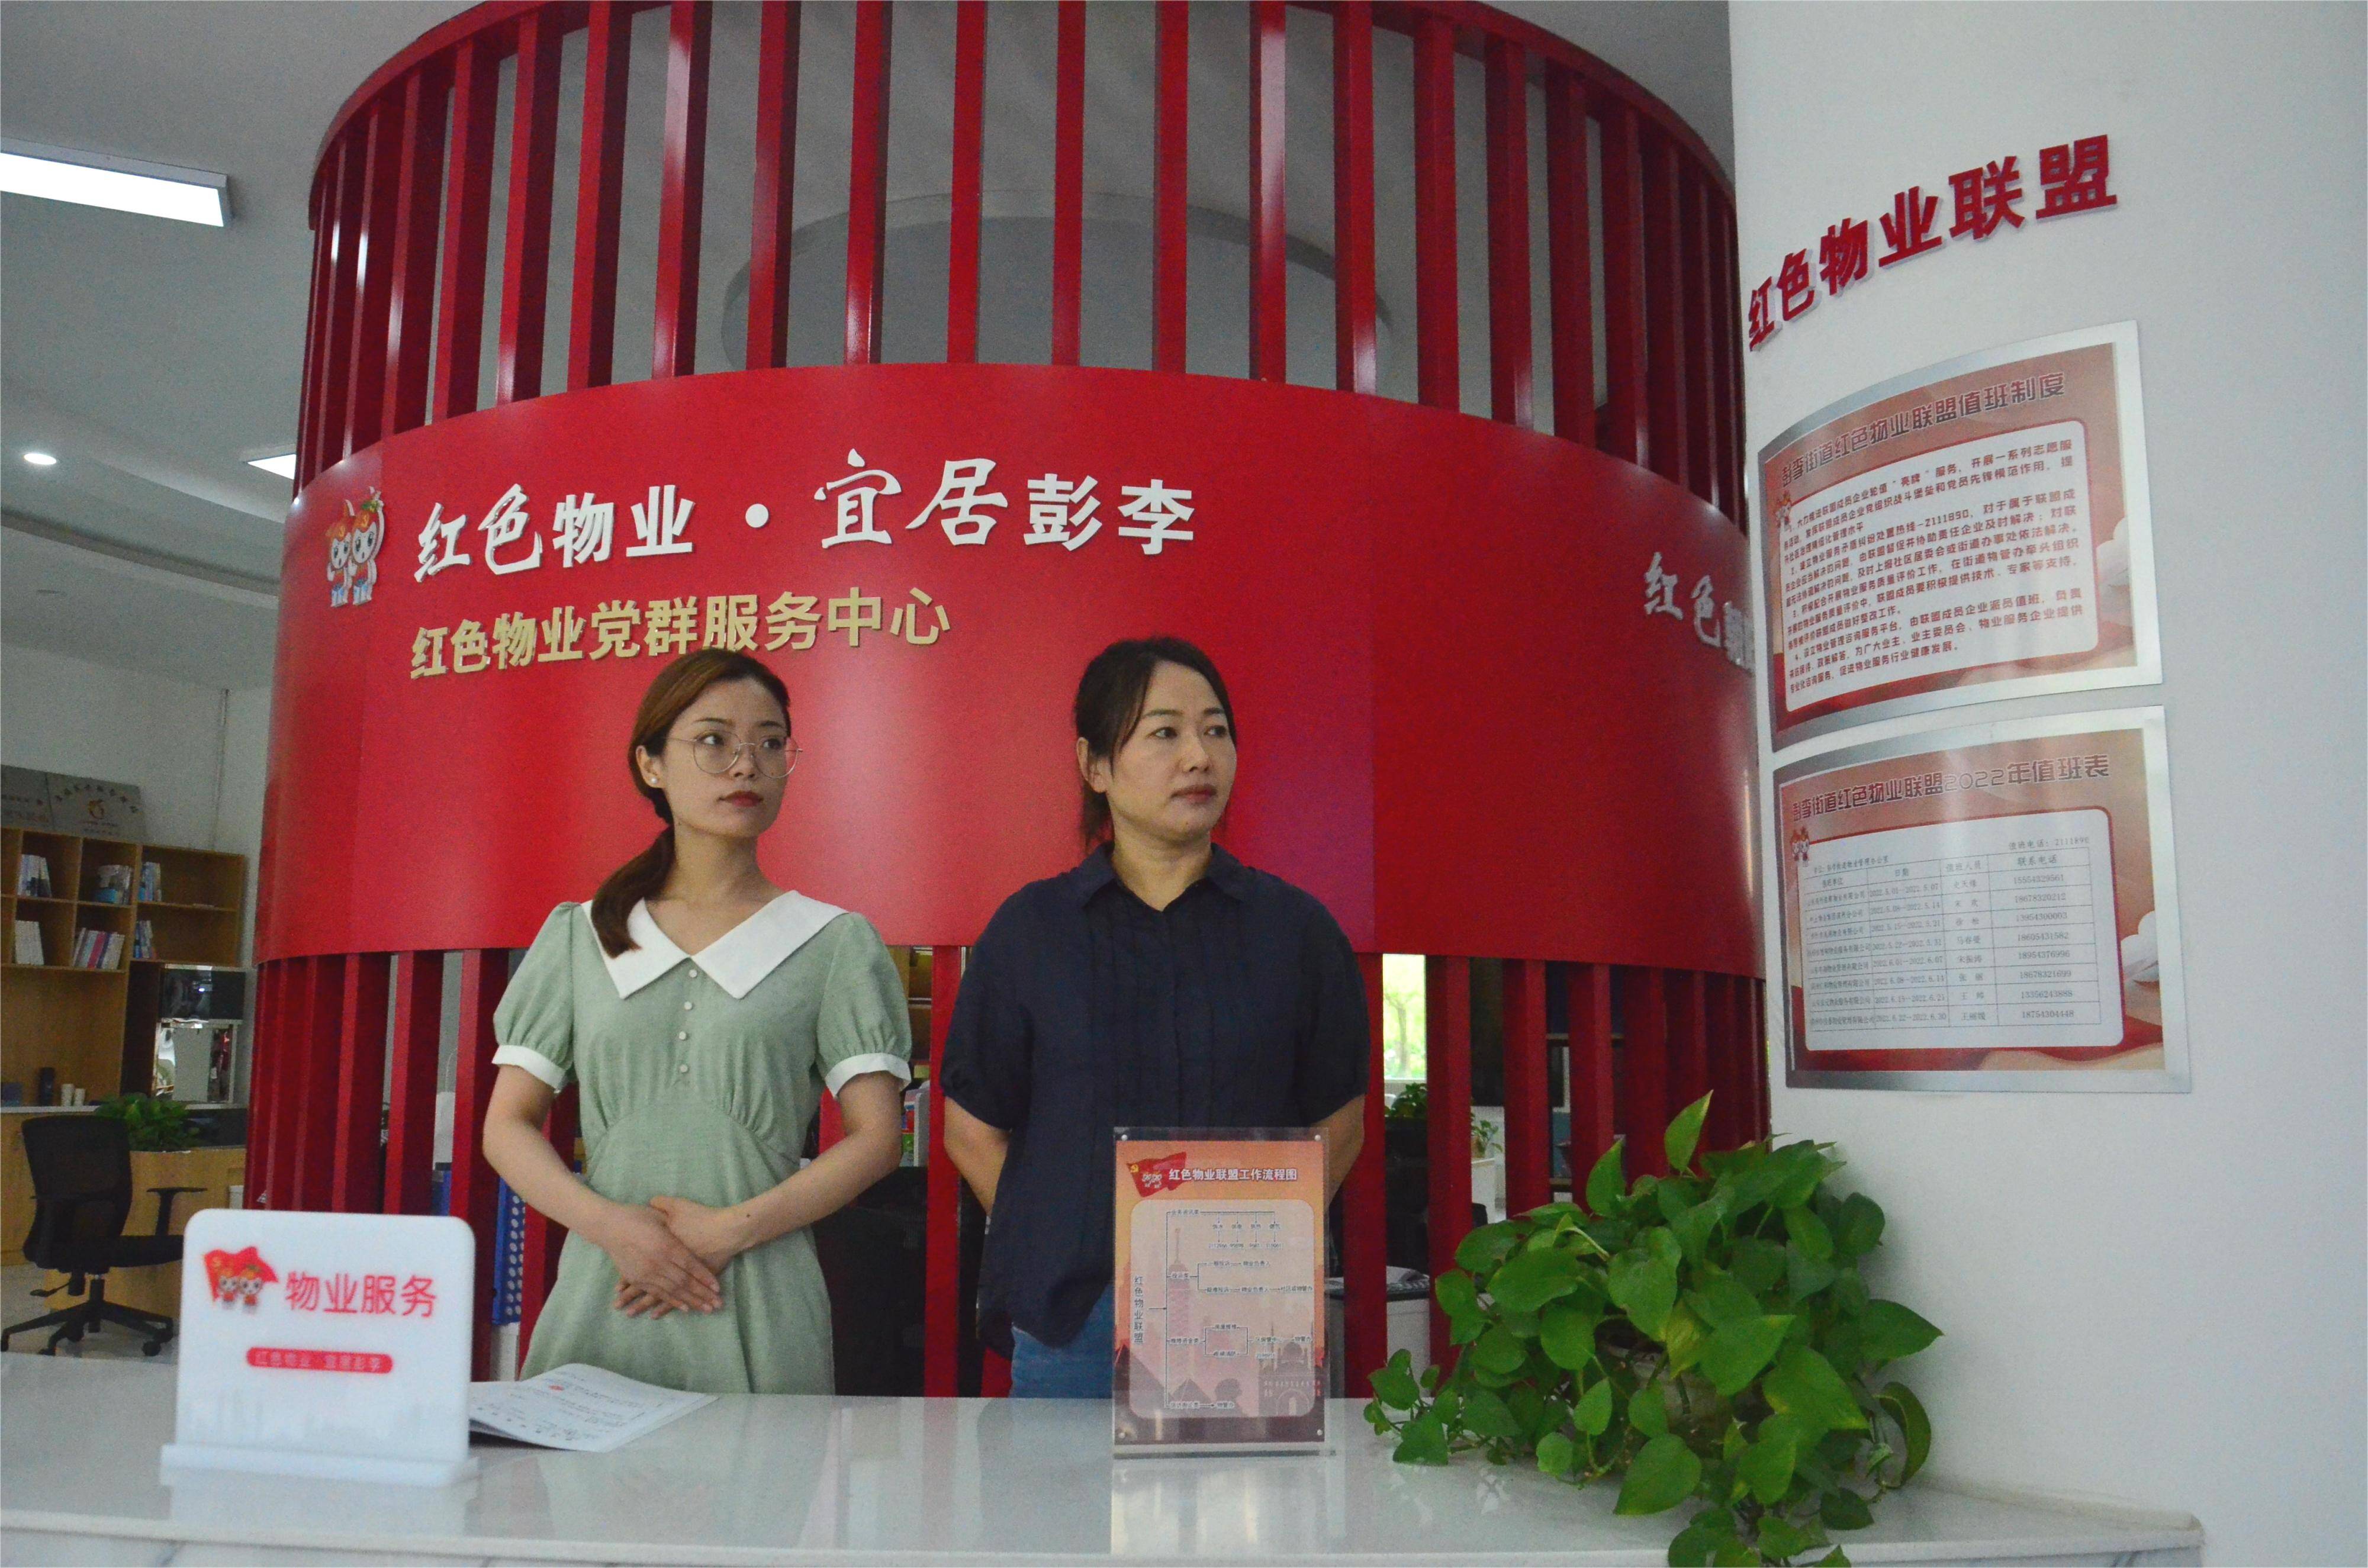 品质滨州丨“渤海红色物业”畅通社区治理“最后一公里” 居民“幸福指数”持续攀升